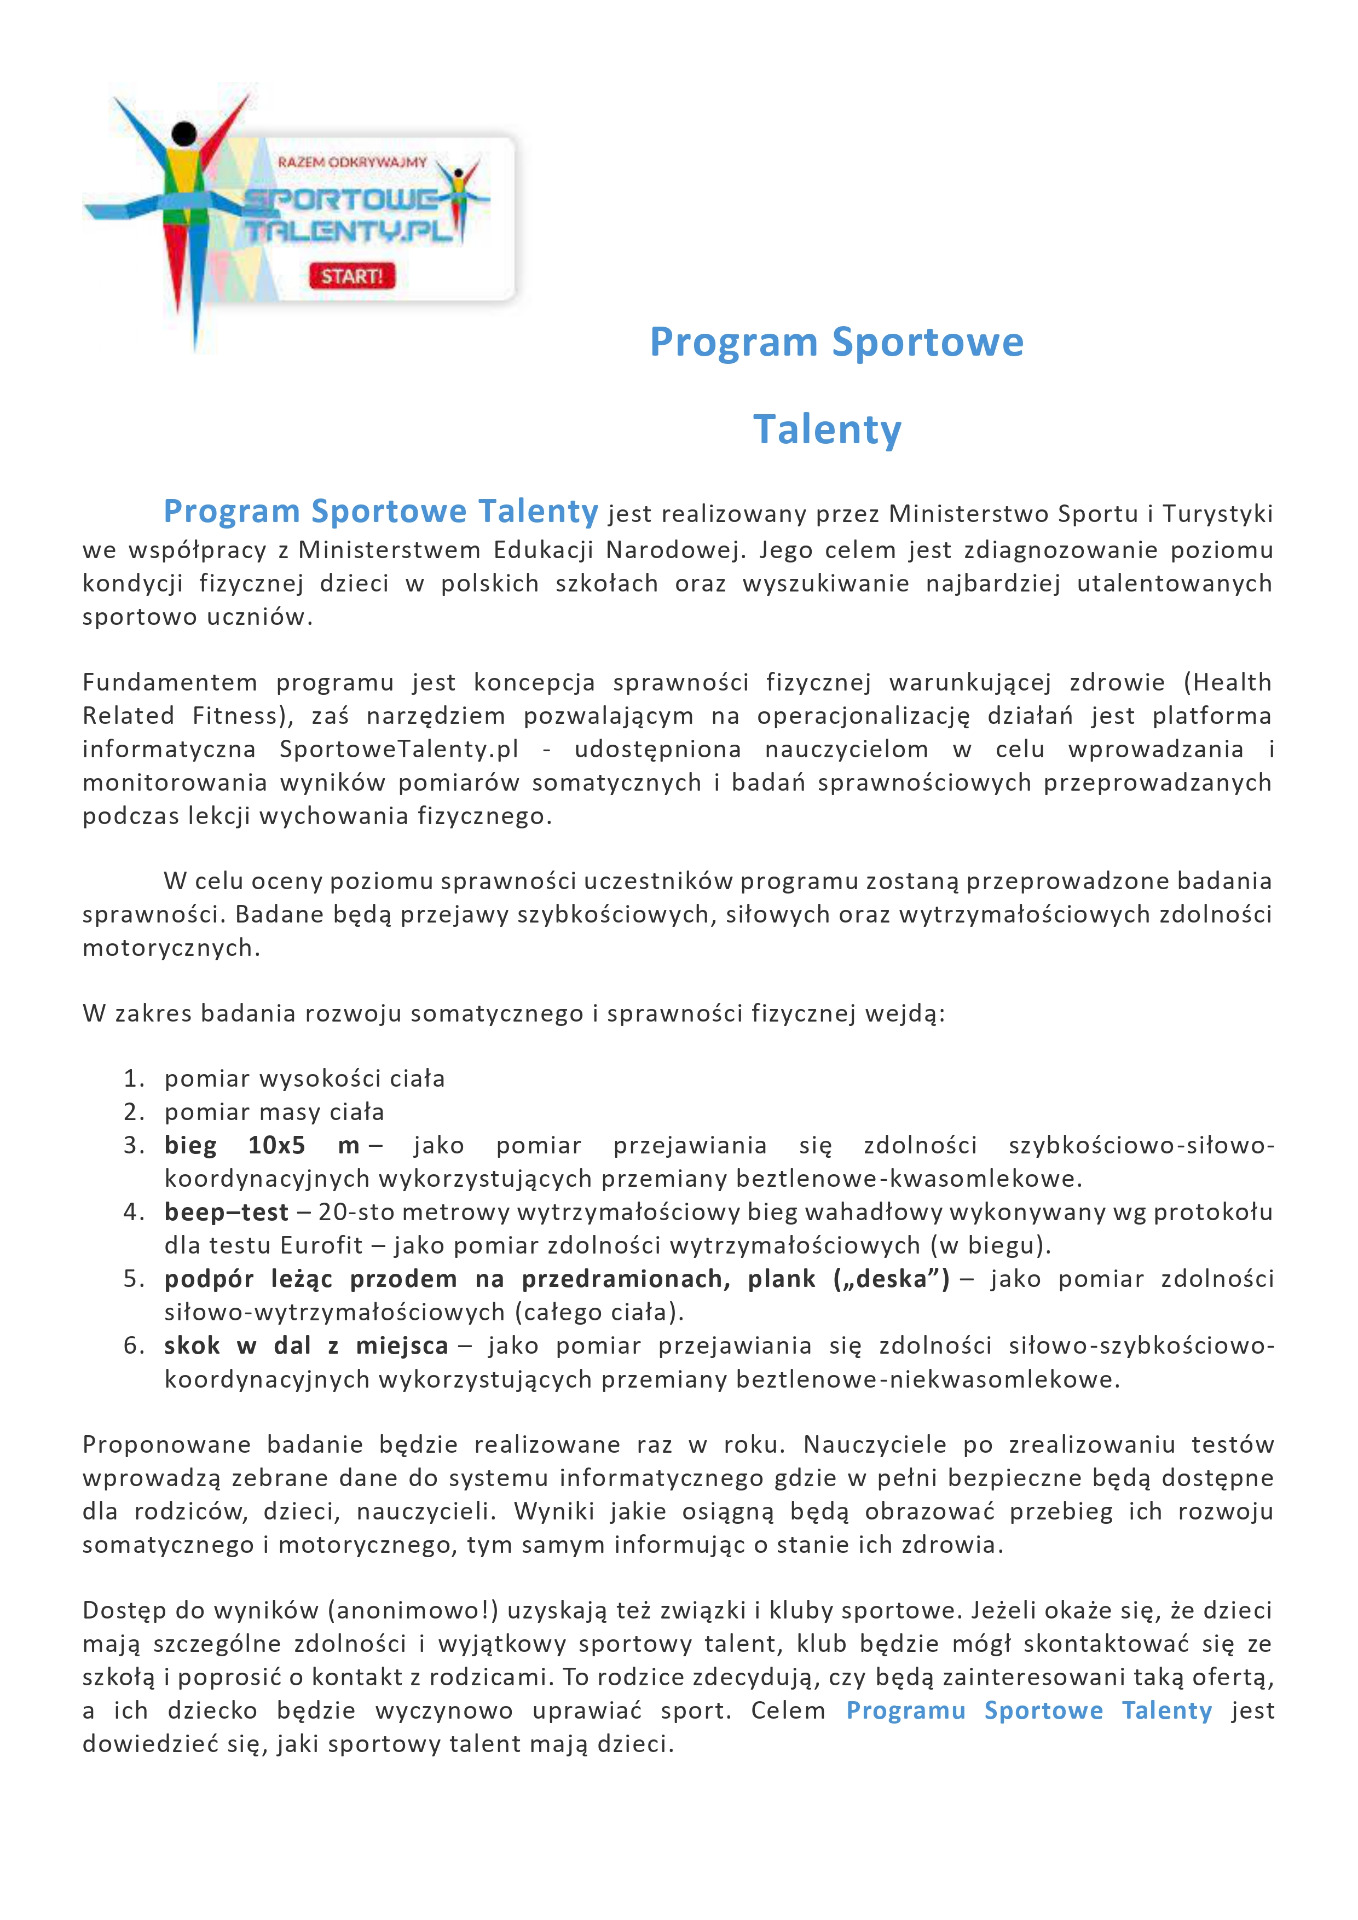 Program Sportowe Talenty - Obrazek 1